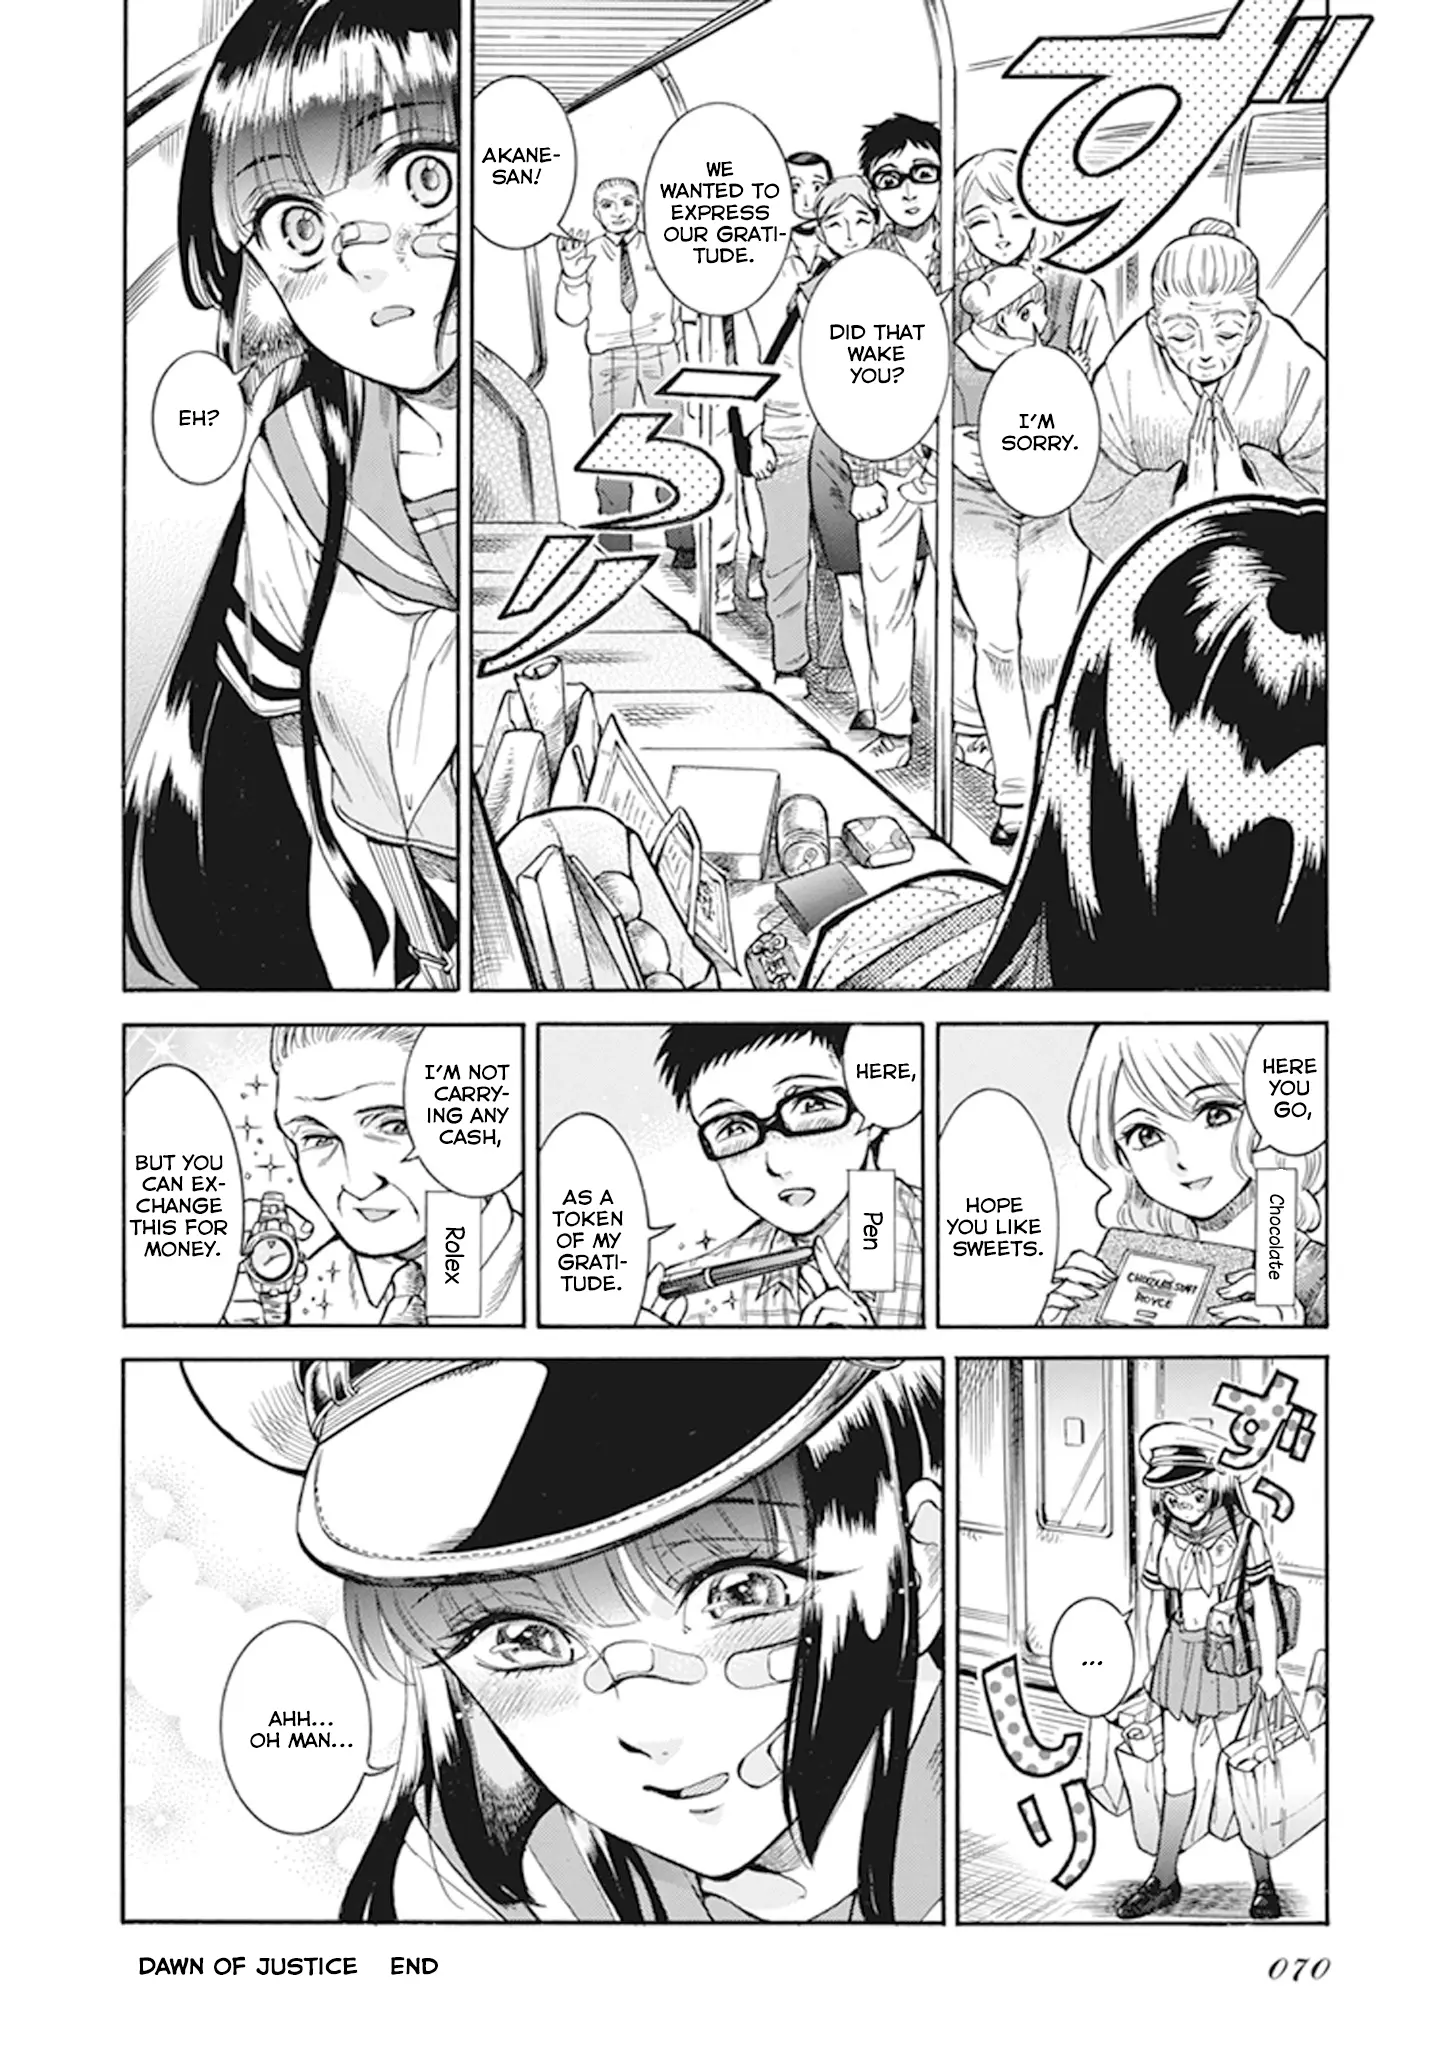 Glamorous Gathering Takahashi - 5 page 28-8f07459e